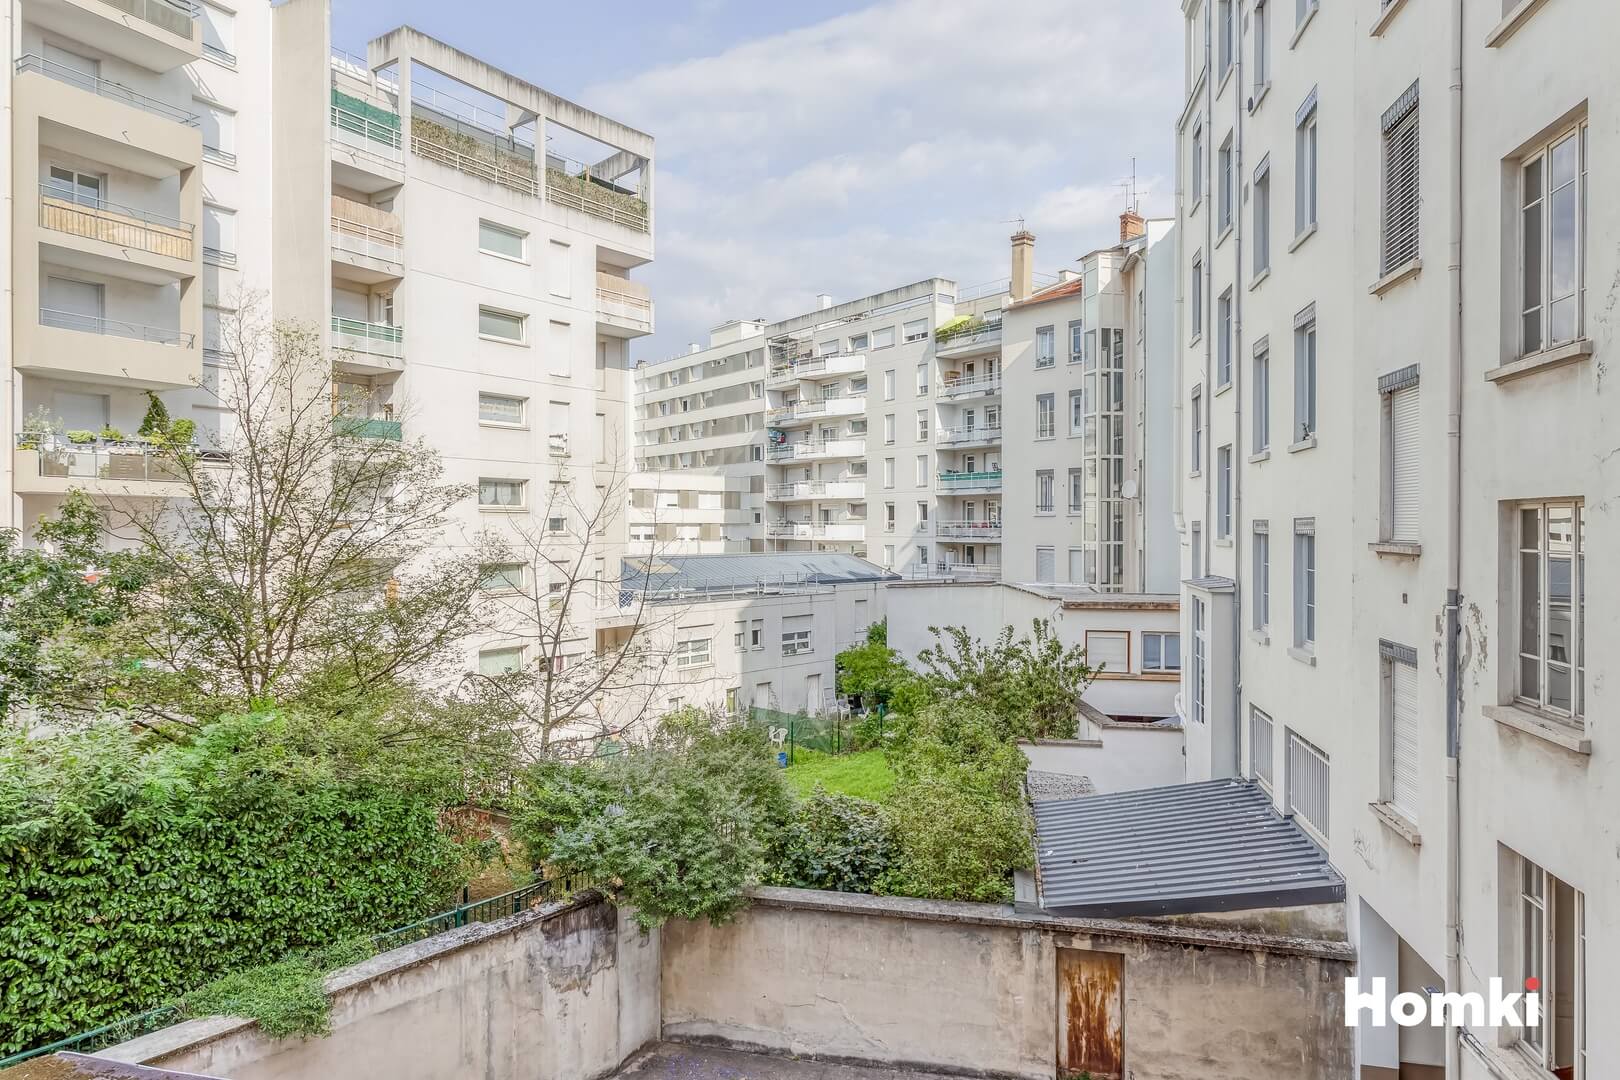 Homki - Vente Appartement  de 38.0 m² à Lyon 69003